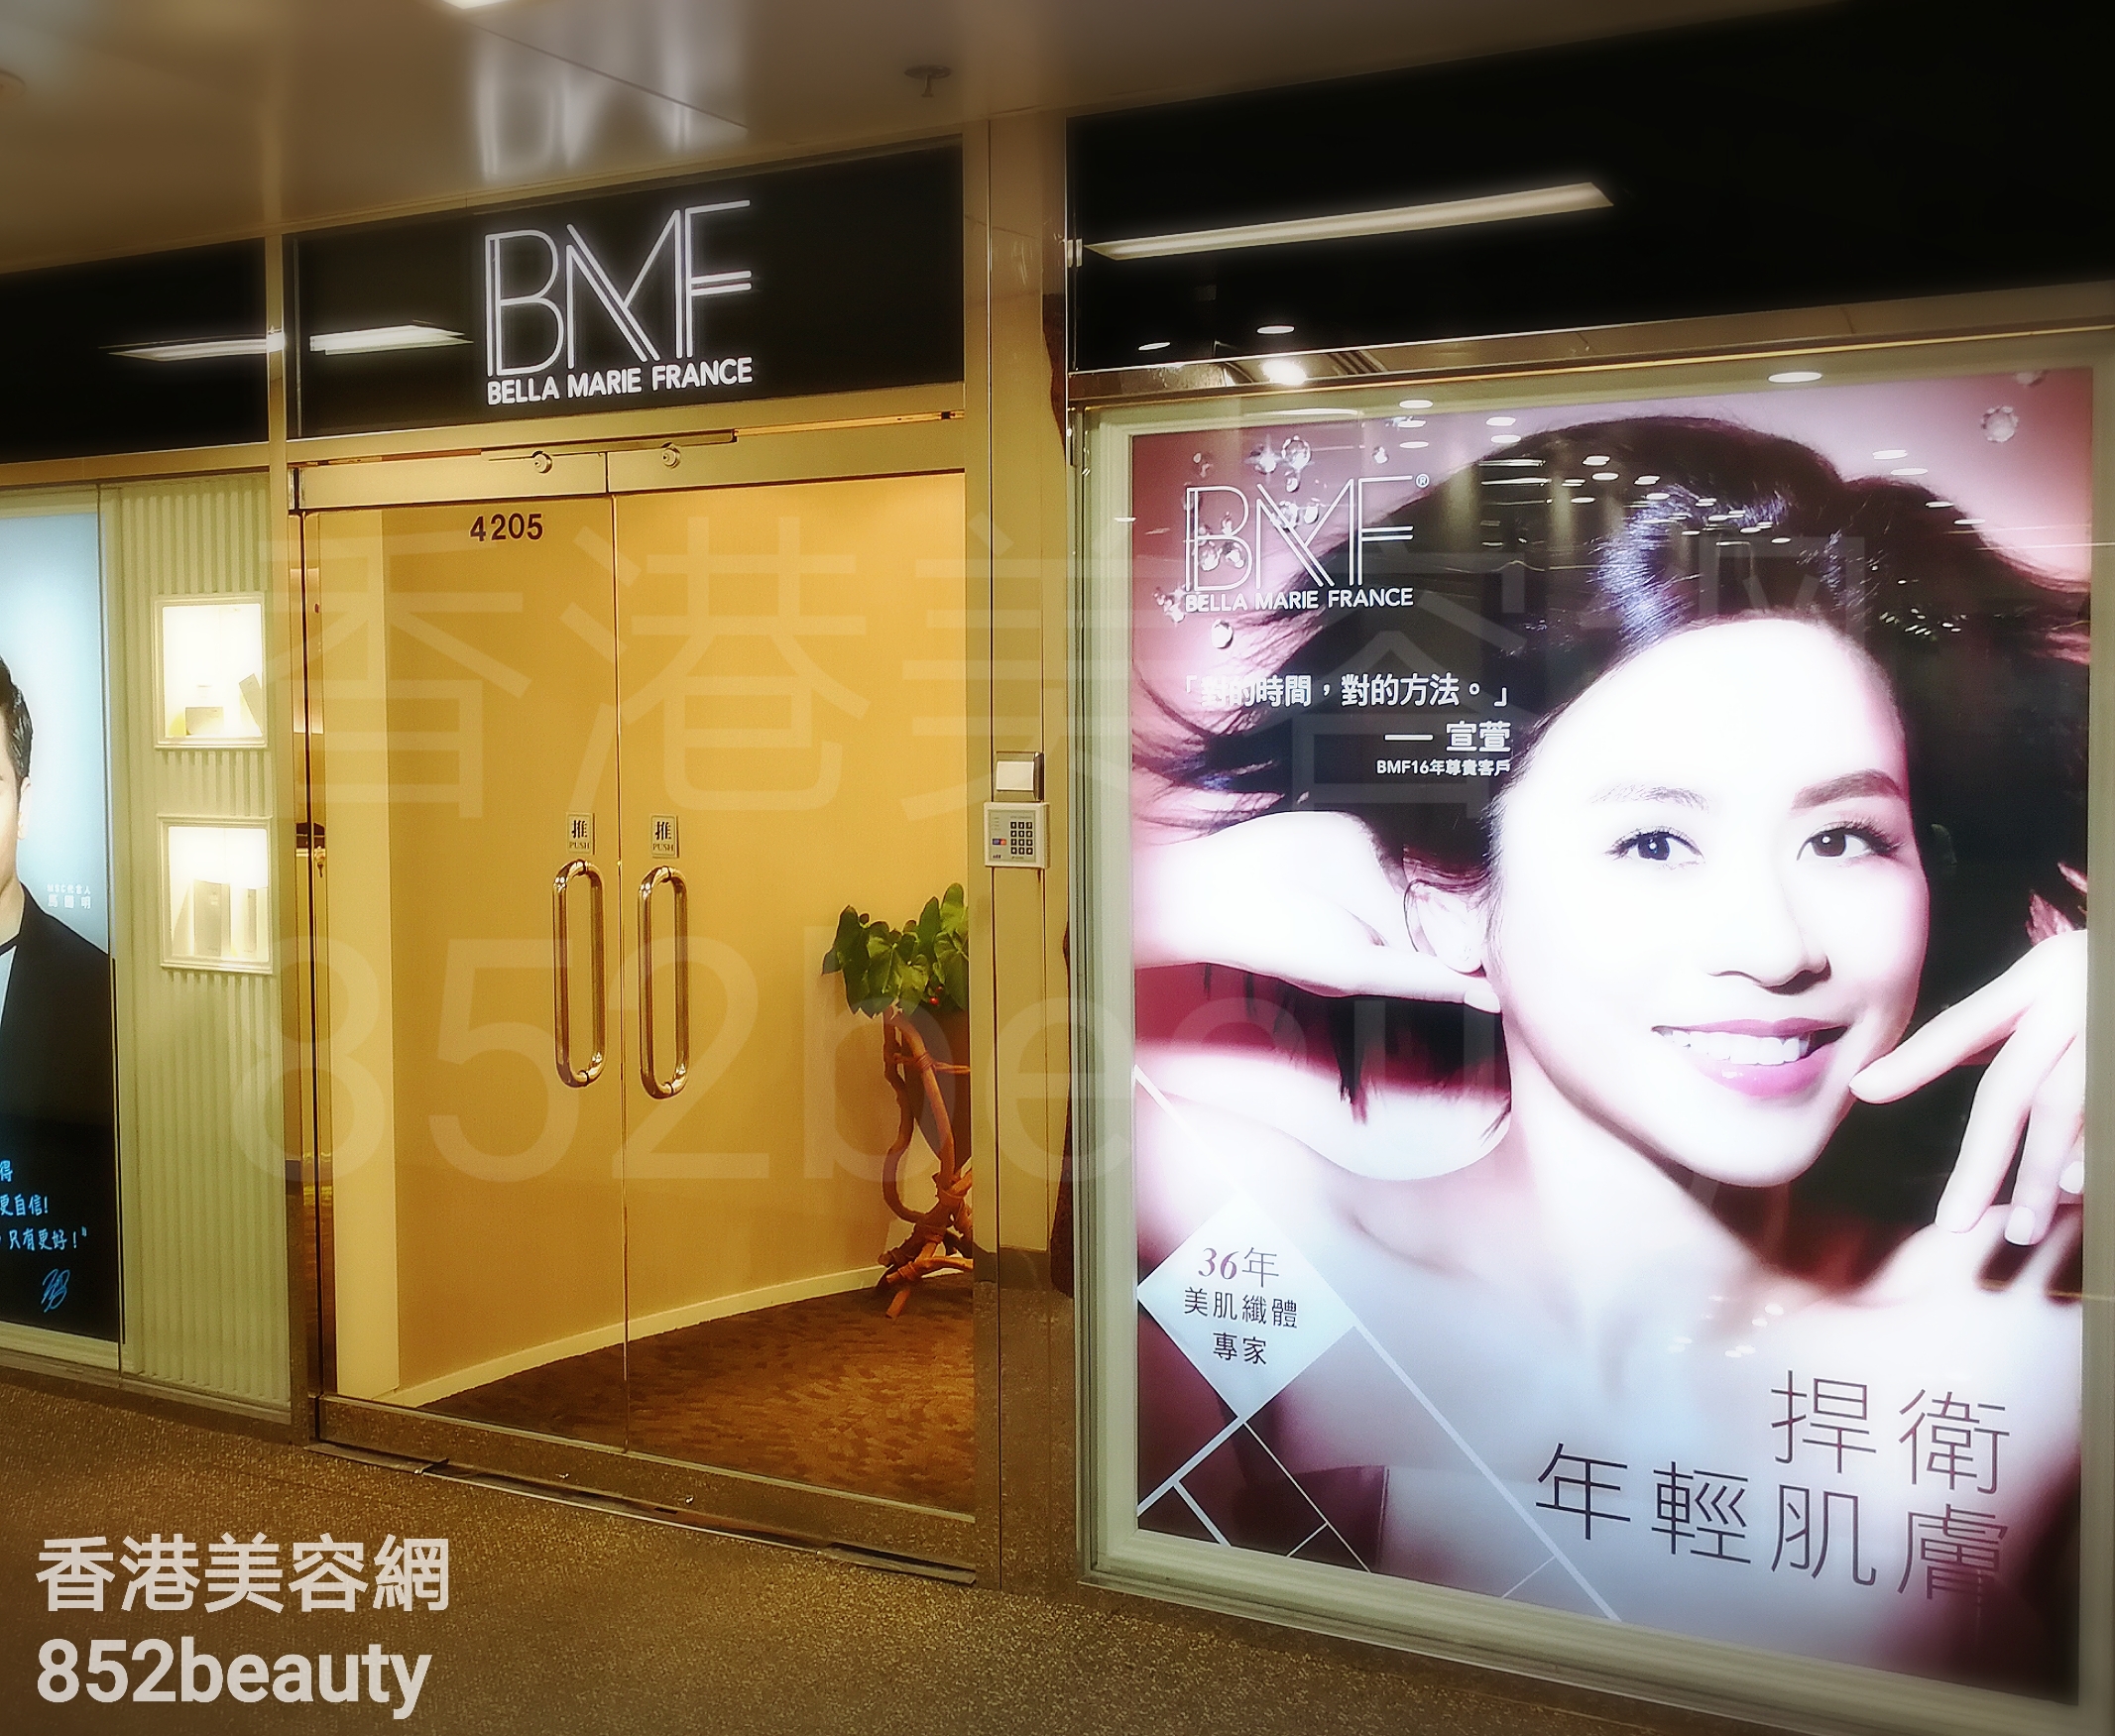 Eye Care: BMF (葵芳店)